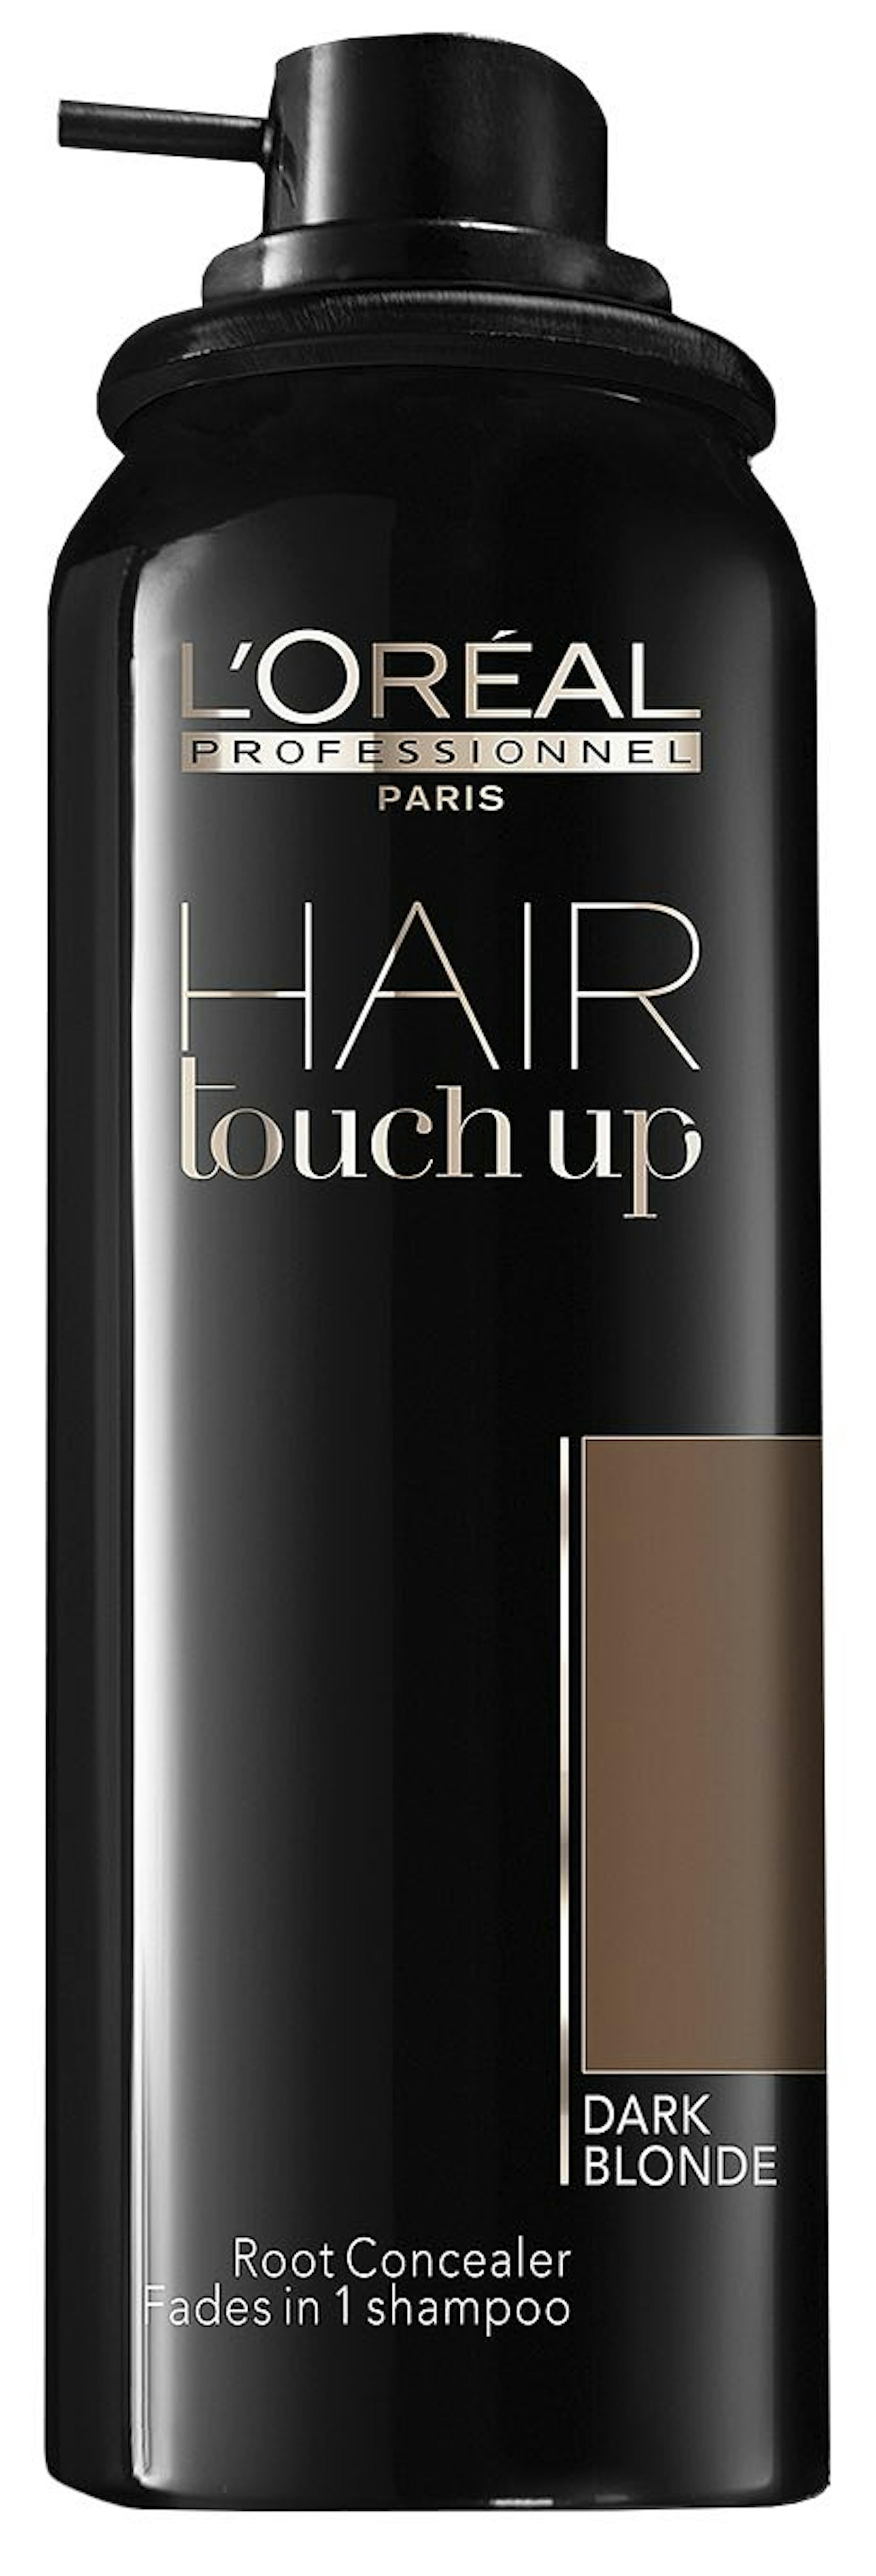 L'Oru00e9al Professionnel Hair Touch Up, £9.99